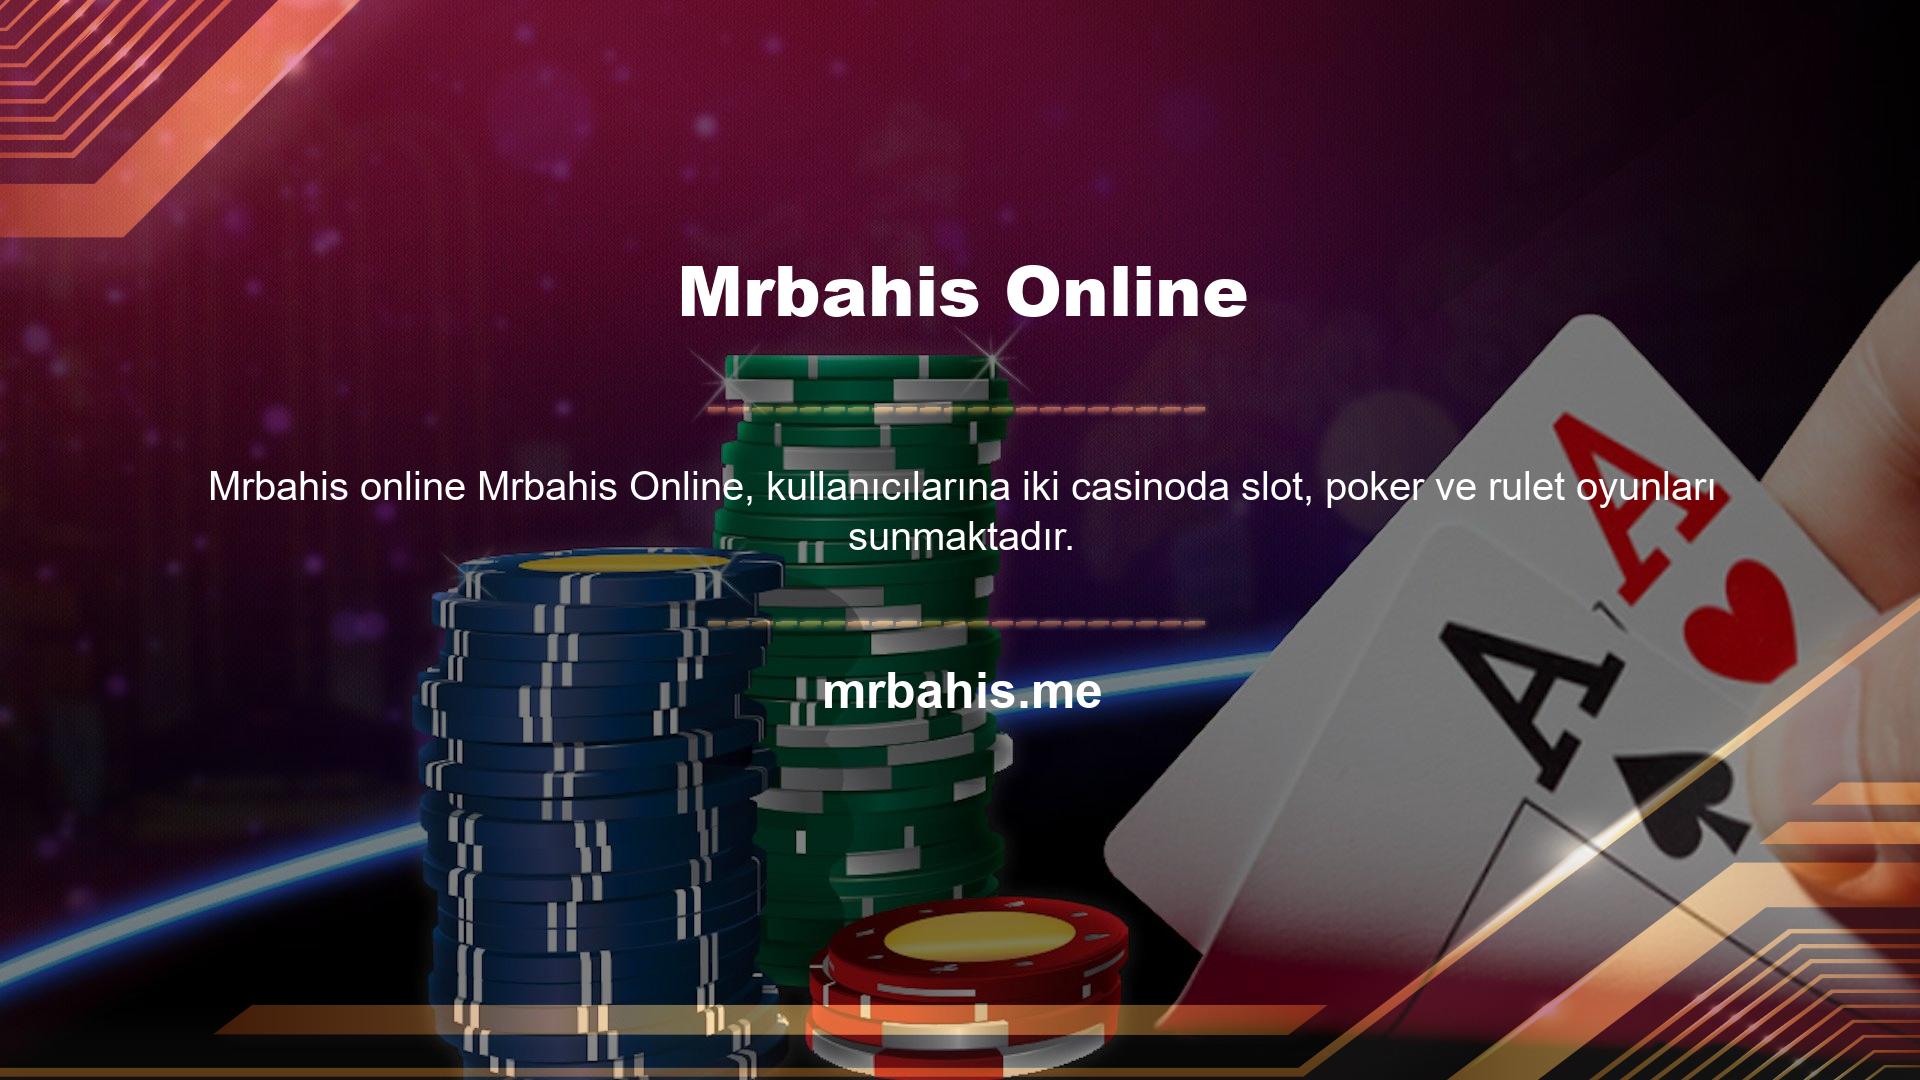 Mrbahis yeni giriş adresi ile kullanıcılar diledikleri zaman sisteme erişebilecek ve online casino oyunları oynayabilecekler